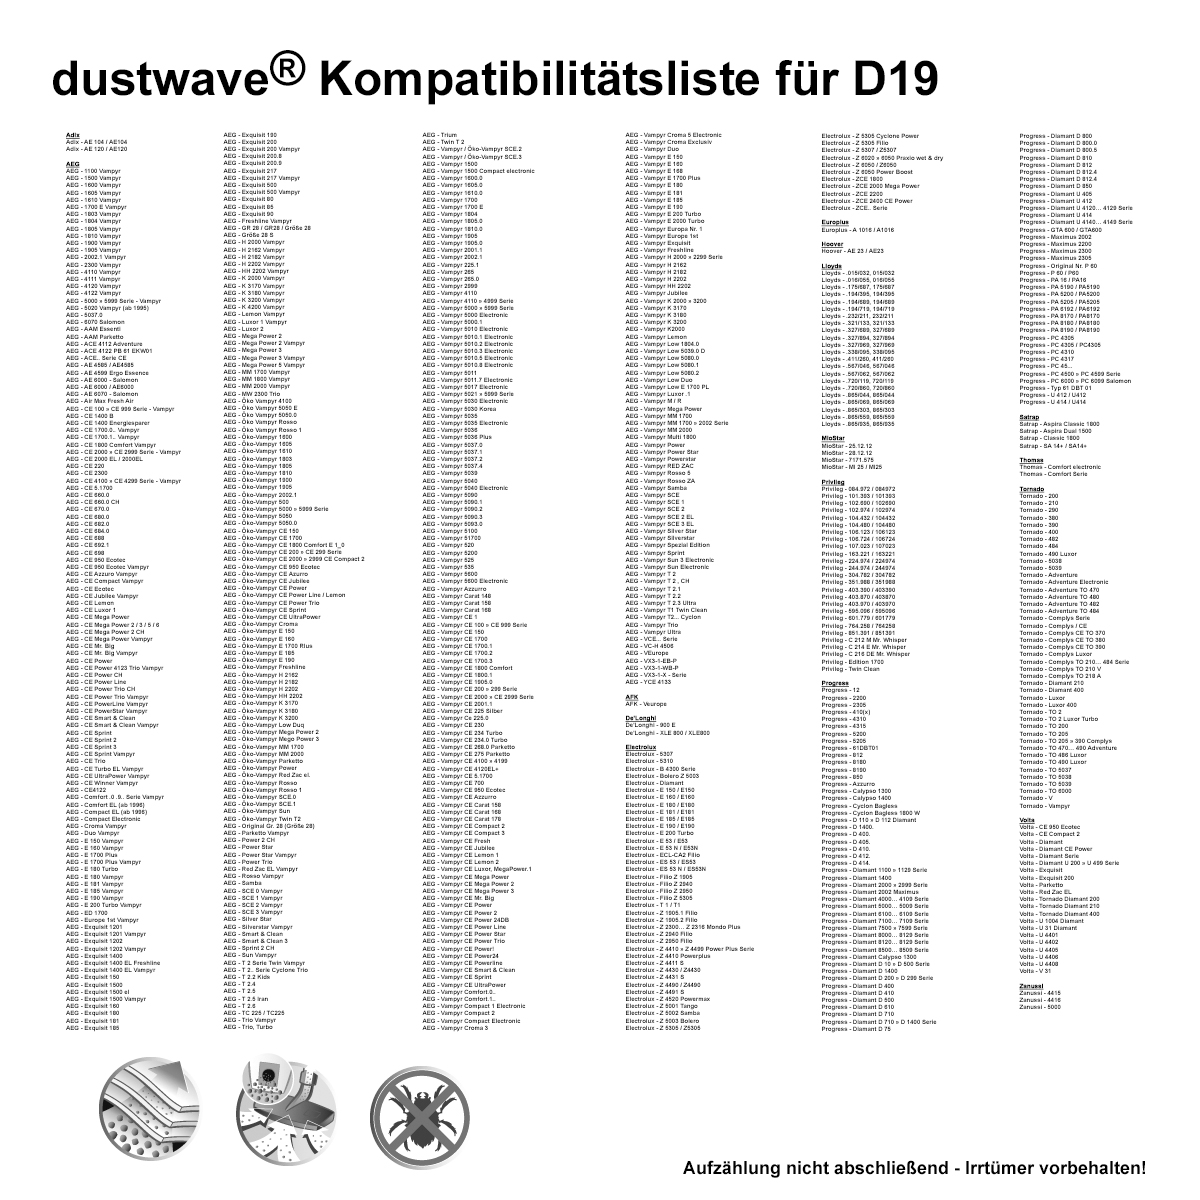 Dustwave® 20 Staubsaugerbeutel für AEG Vampyr CE 670 / 670 Korea / 670 NZ - hocheffizient, mehrlagiges Mikrovlies mit Hygieneverschluss - Made in Germany